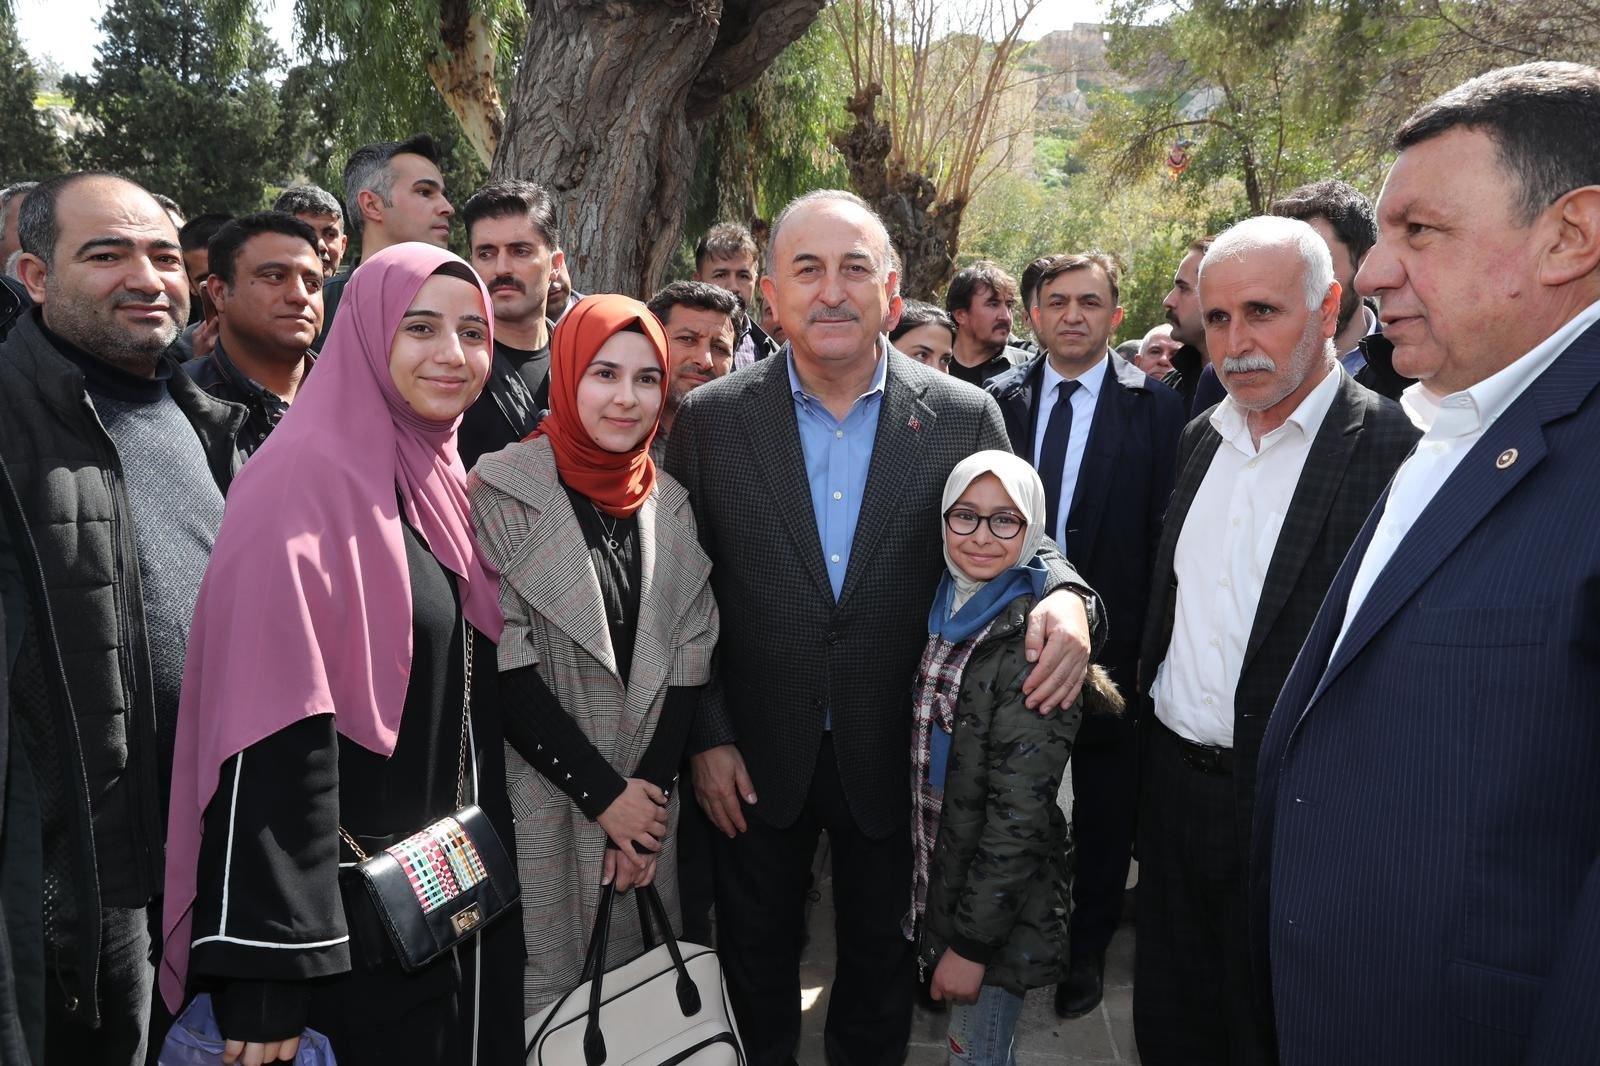 Foreign Minister Mevlüt Çavuşoğlu poses with people near Balıklıgöl Lake after the recent floods in the region, Şanlıurfa, Türkiye, March 27, 2023. (DHA Photo)